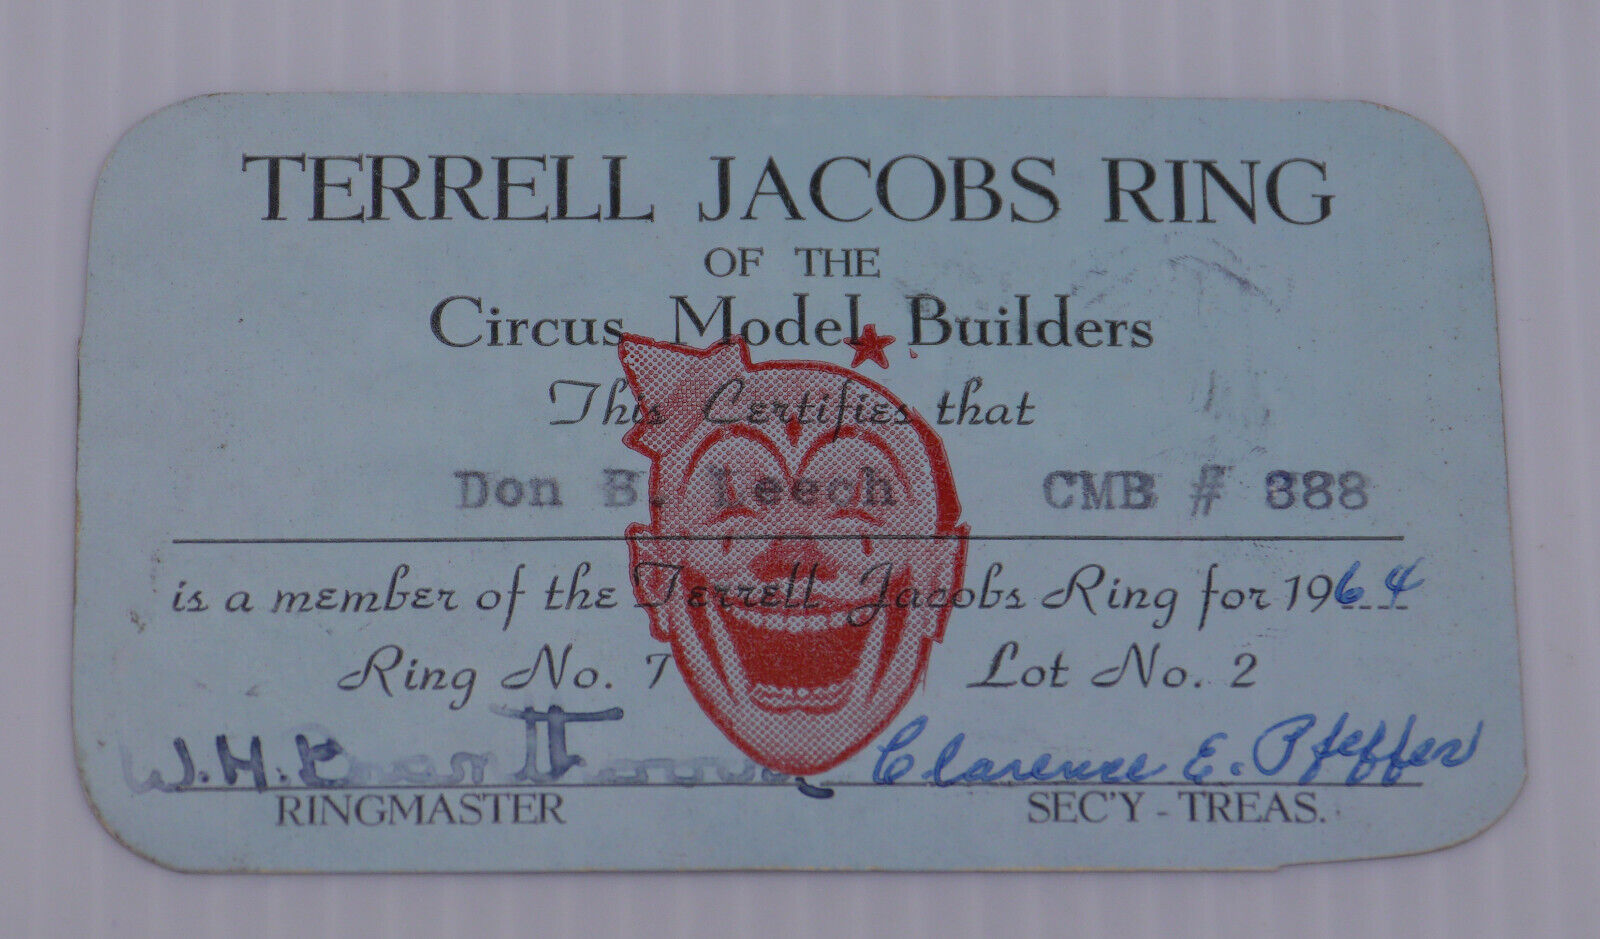 1964 CIRCUS MODEL BUILDERS MEMBERSHIP CARD, TERRELL JACOBS RING